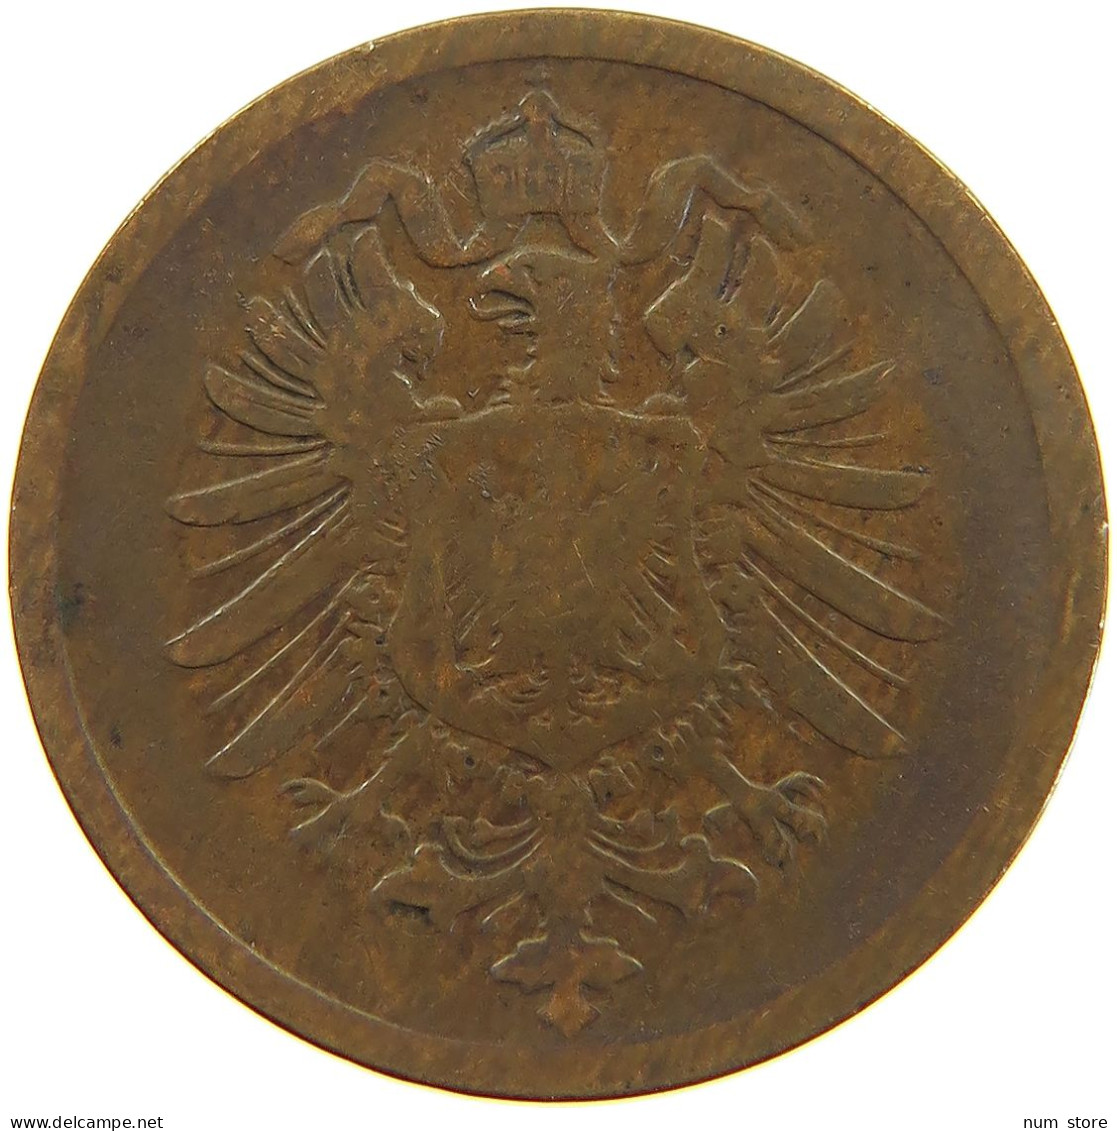 GERMANY EMPIRE 2 PFENNIG 1875 G #a066 0723 - 2 Pfennig